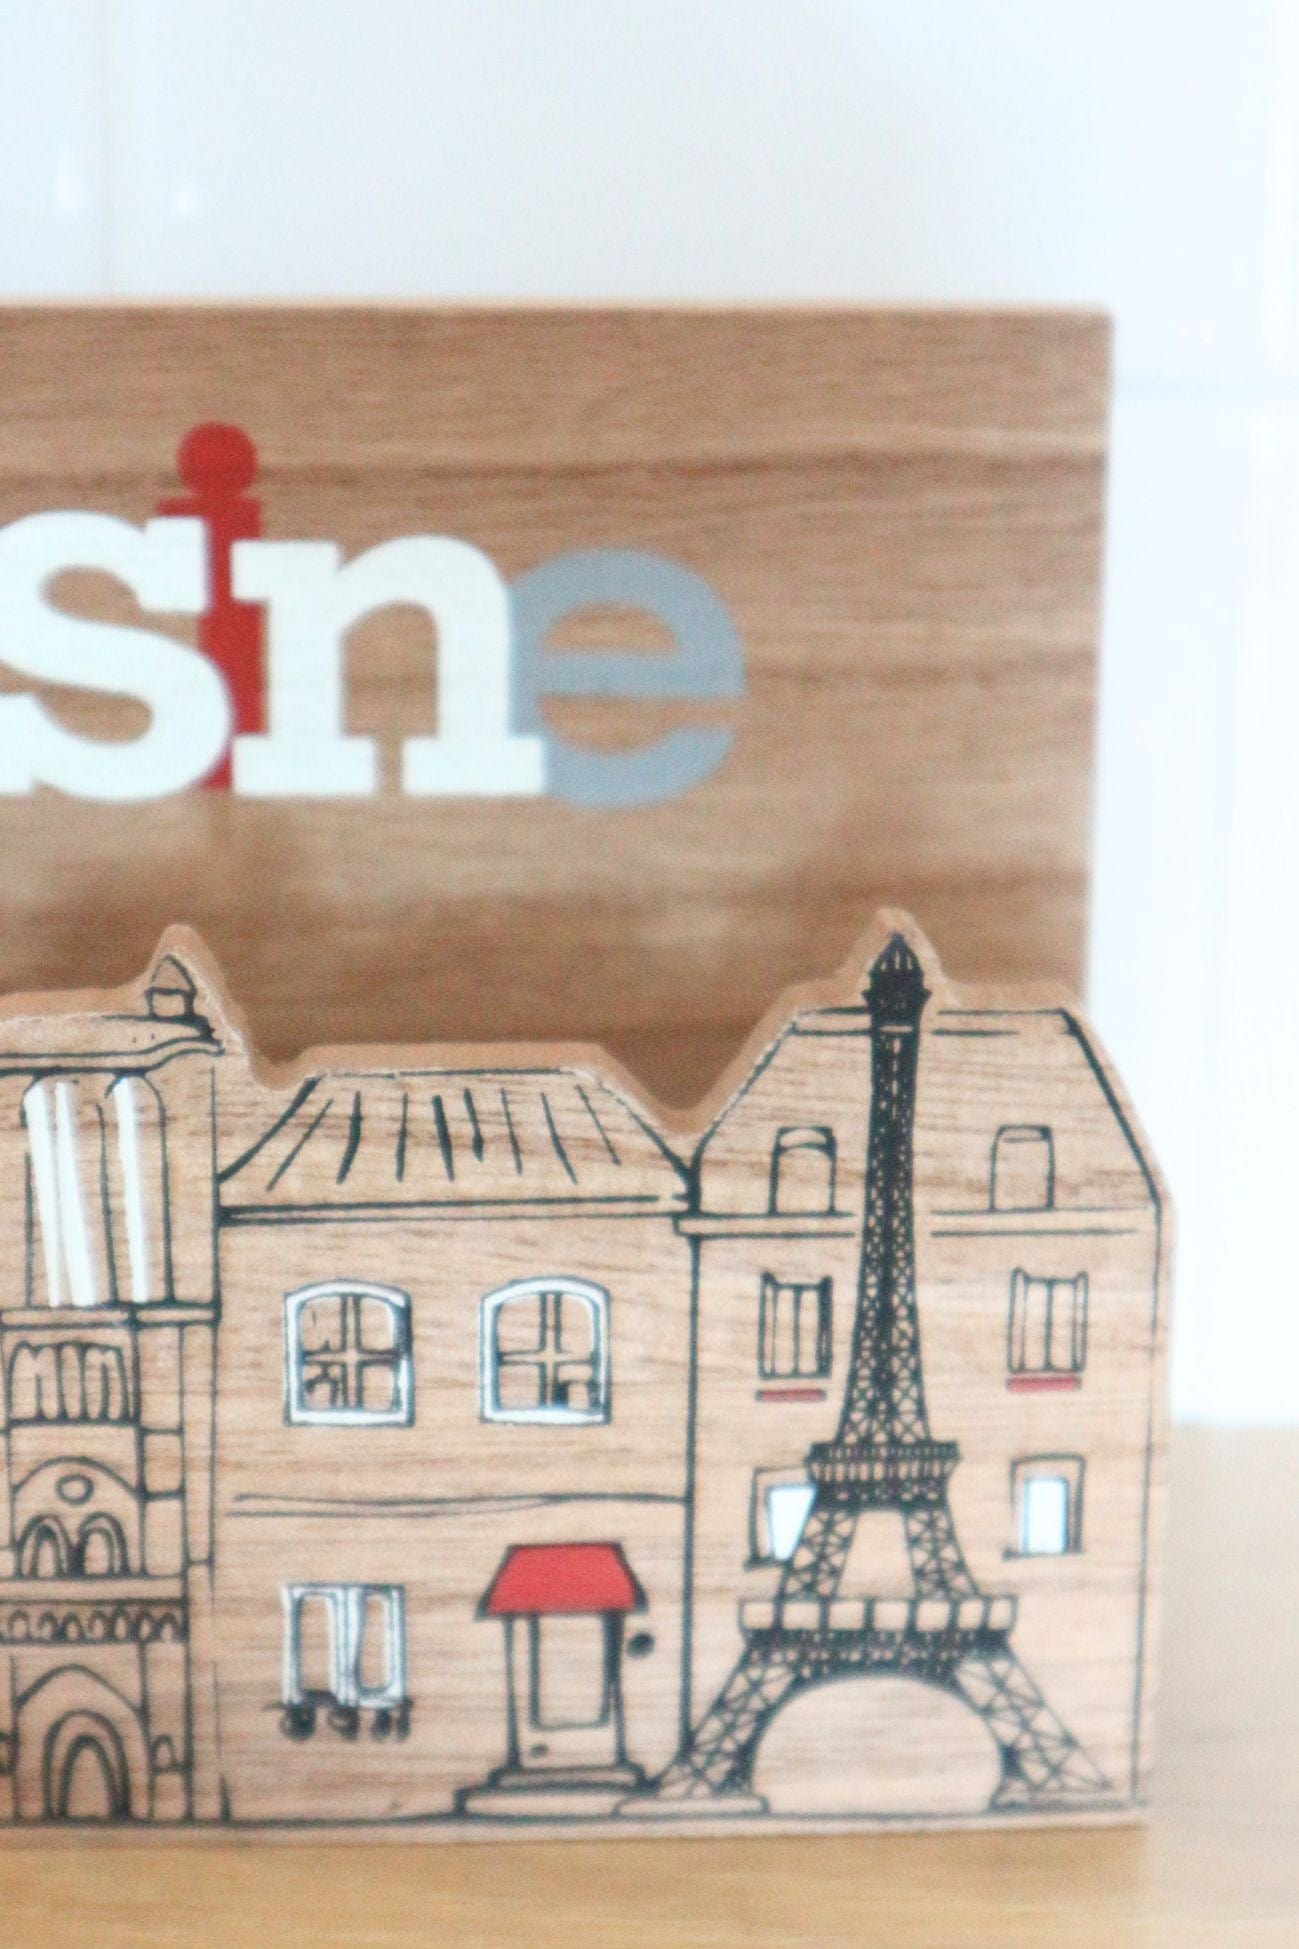 Item International Cuisine Cuisine - Portatovaglioli in legno con vista su Parigi | Item International